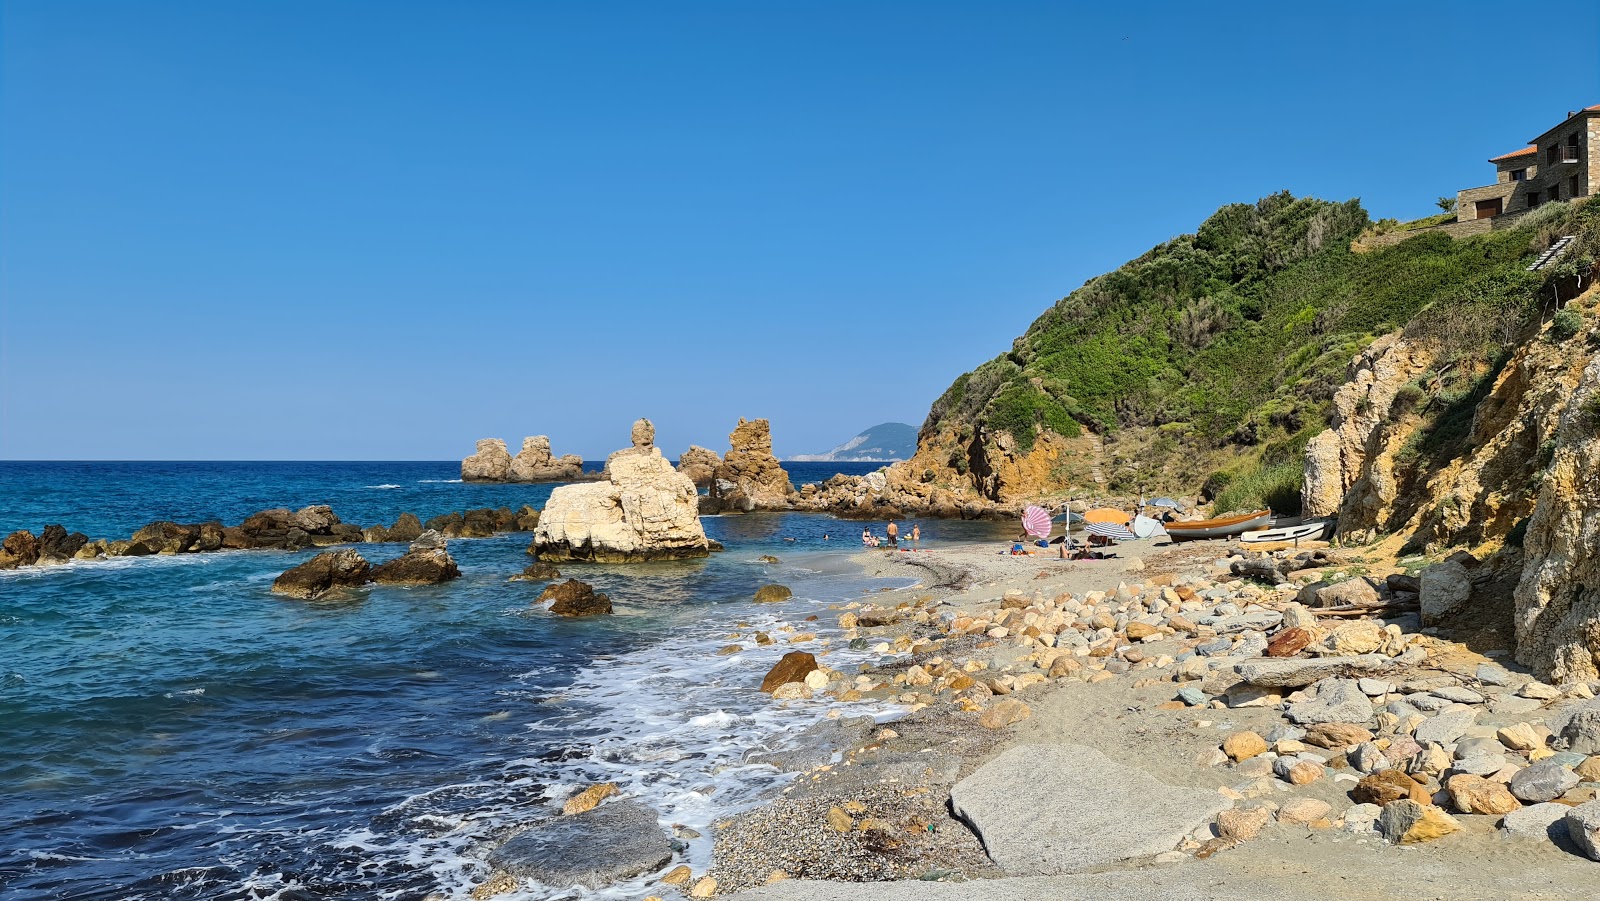 Fotografija Mouritas beach nahaja se v naravnem okolju